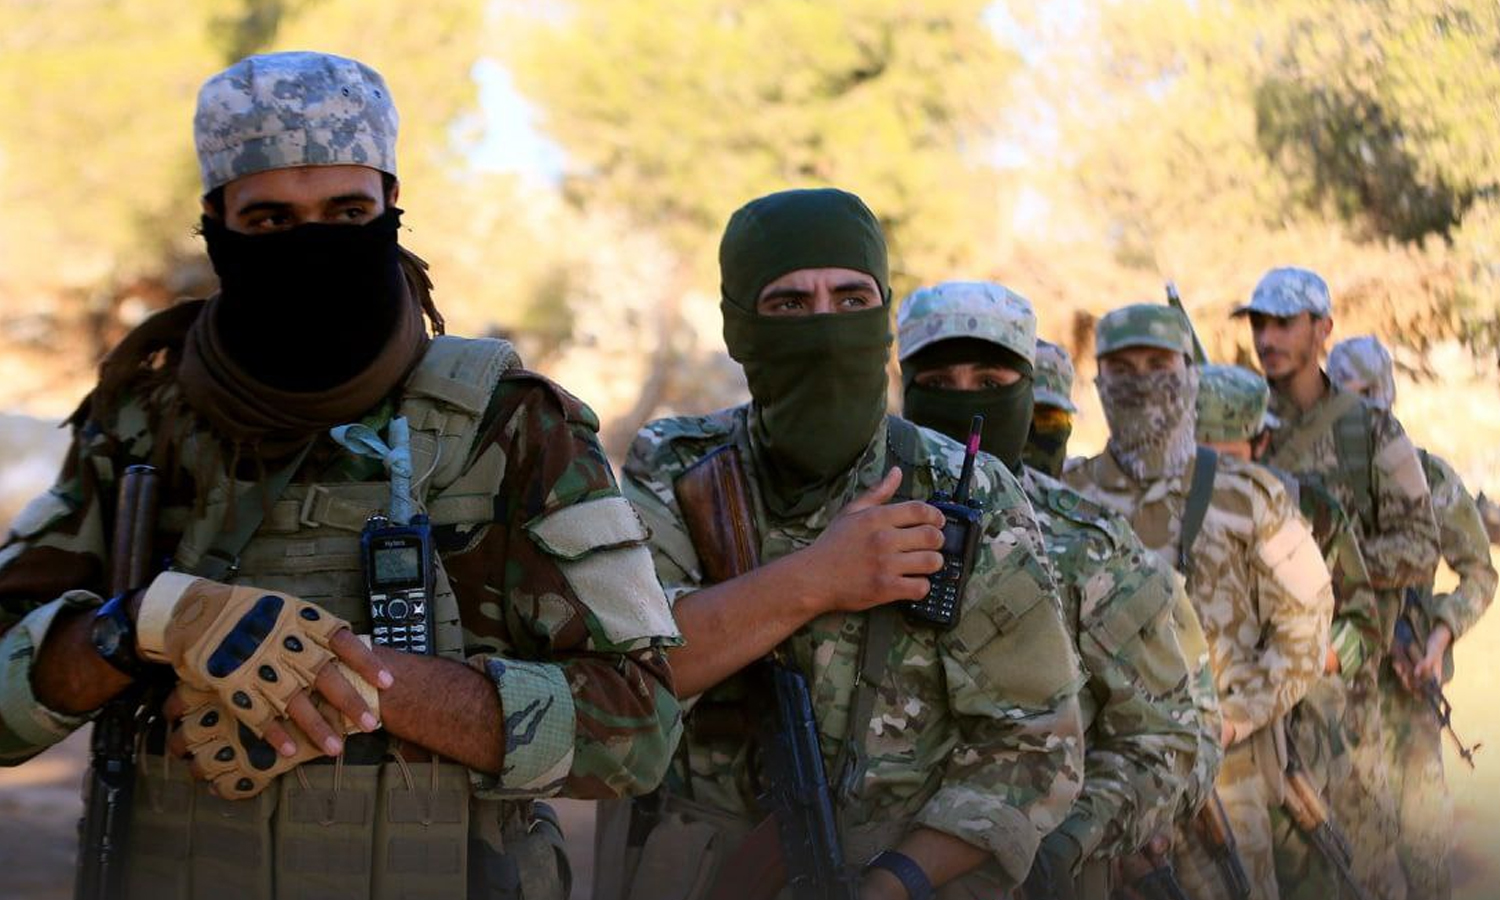 مقاتلون من "القوات الخاصة" في "هيئة تحرير الشام" أثناء التدريبات- 6 أيلول 2021 (أمجاد)